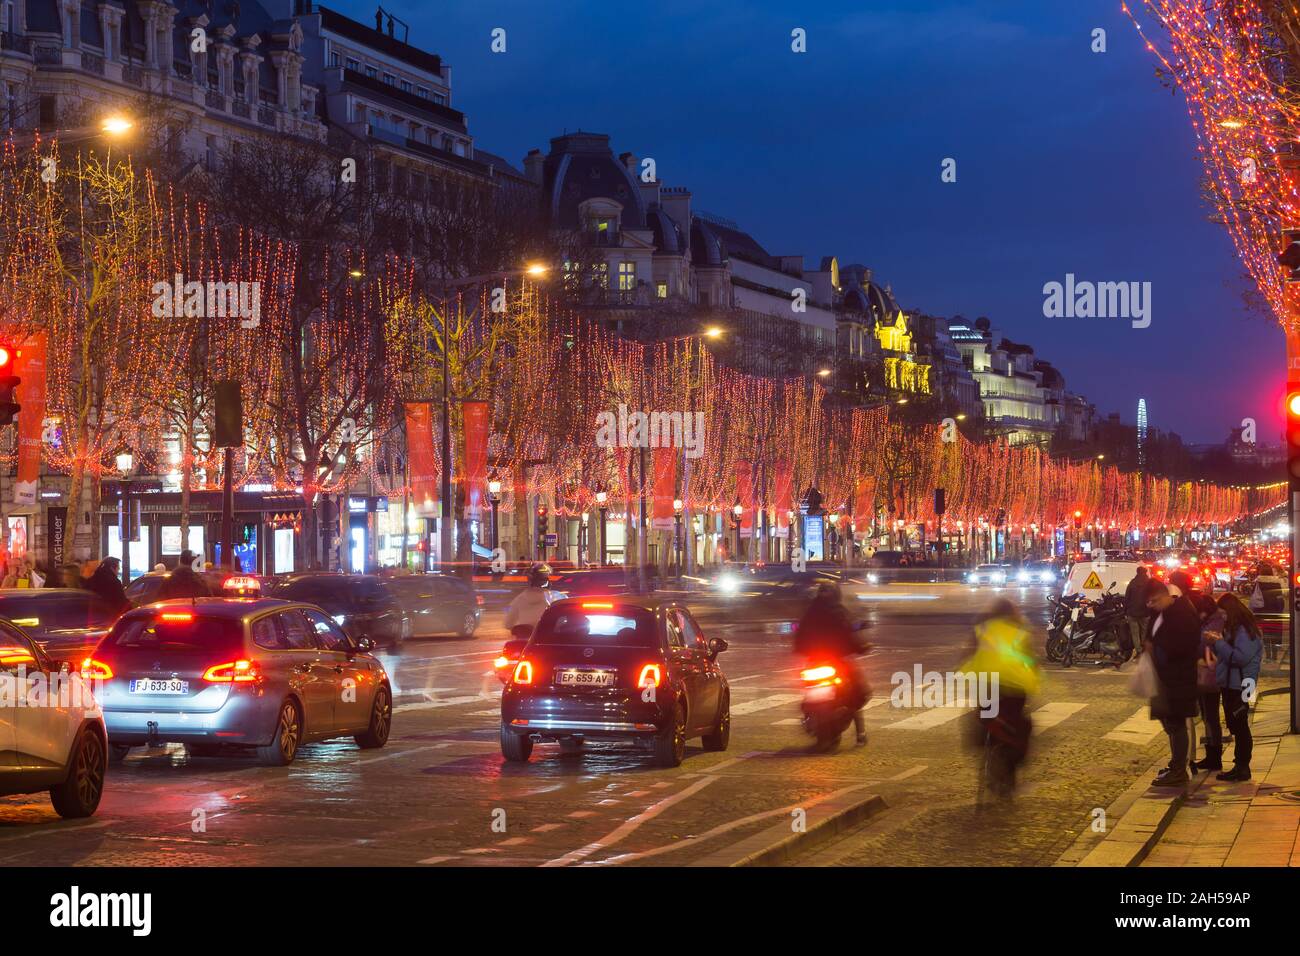 Paris Christmas lights - Avenue Champs-Elysees während der Weihnachtszeit in Paris, Frankreich, Europa eingerichtet. Stockfoto